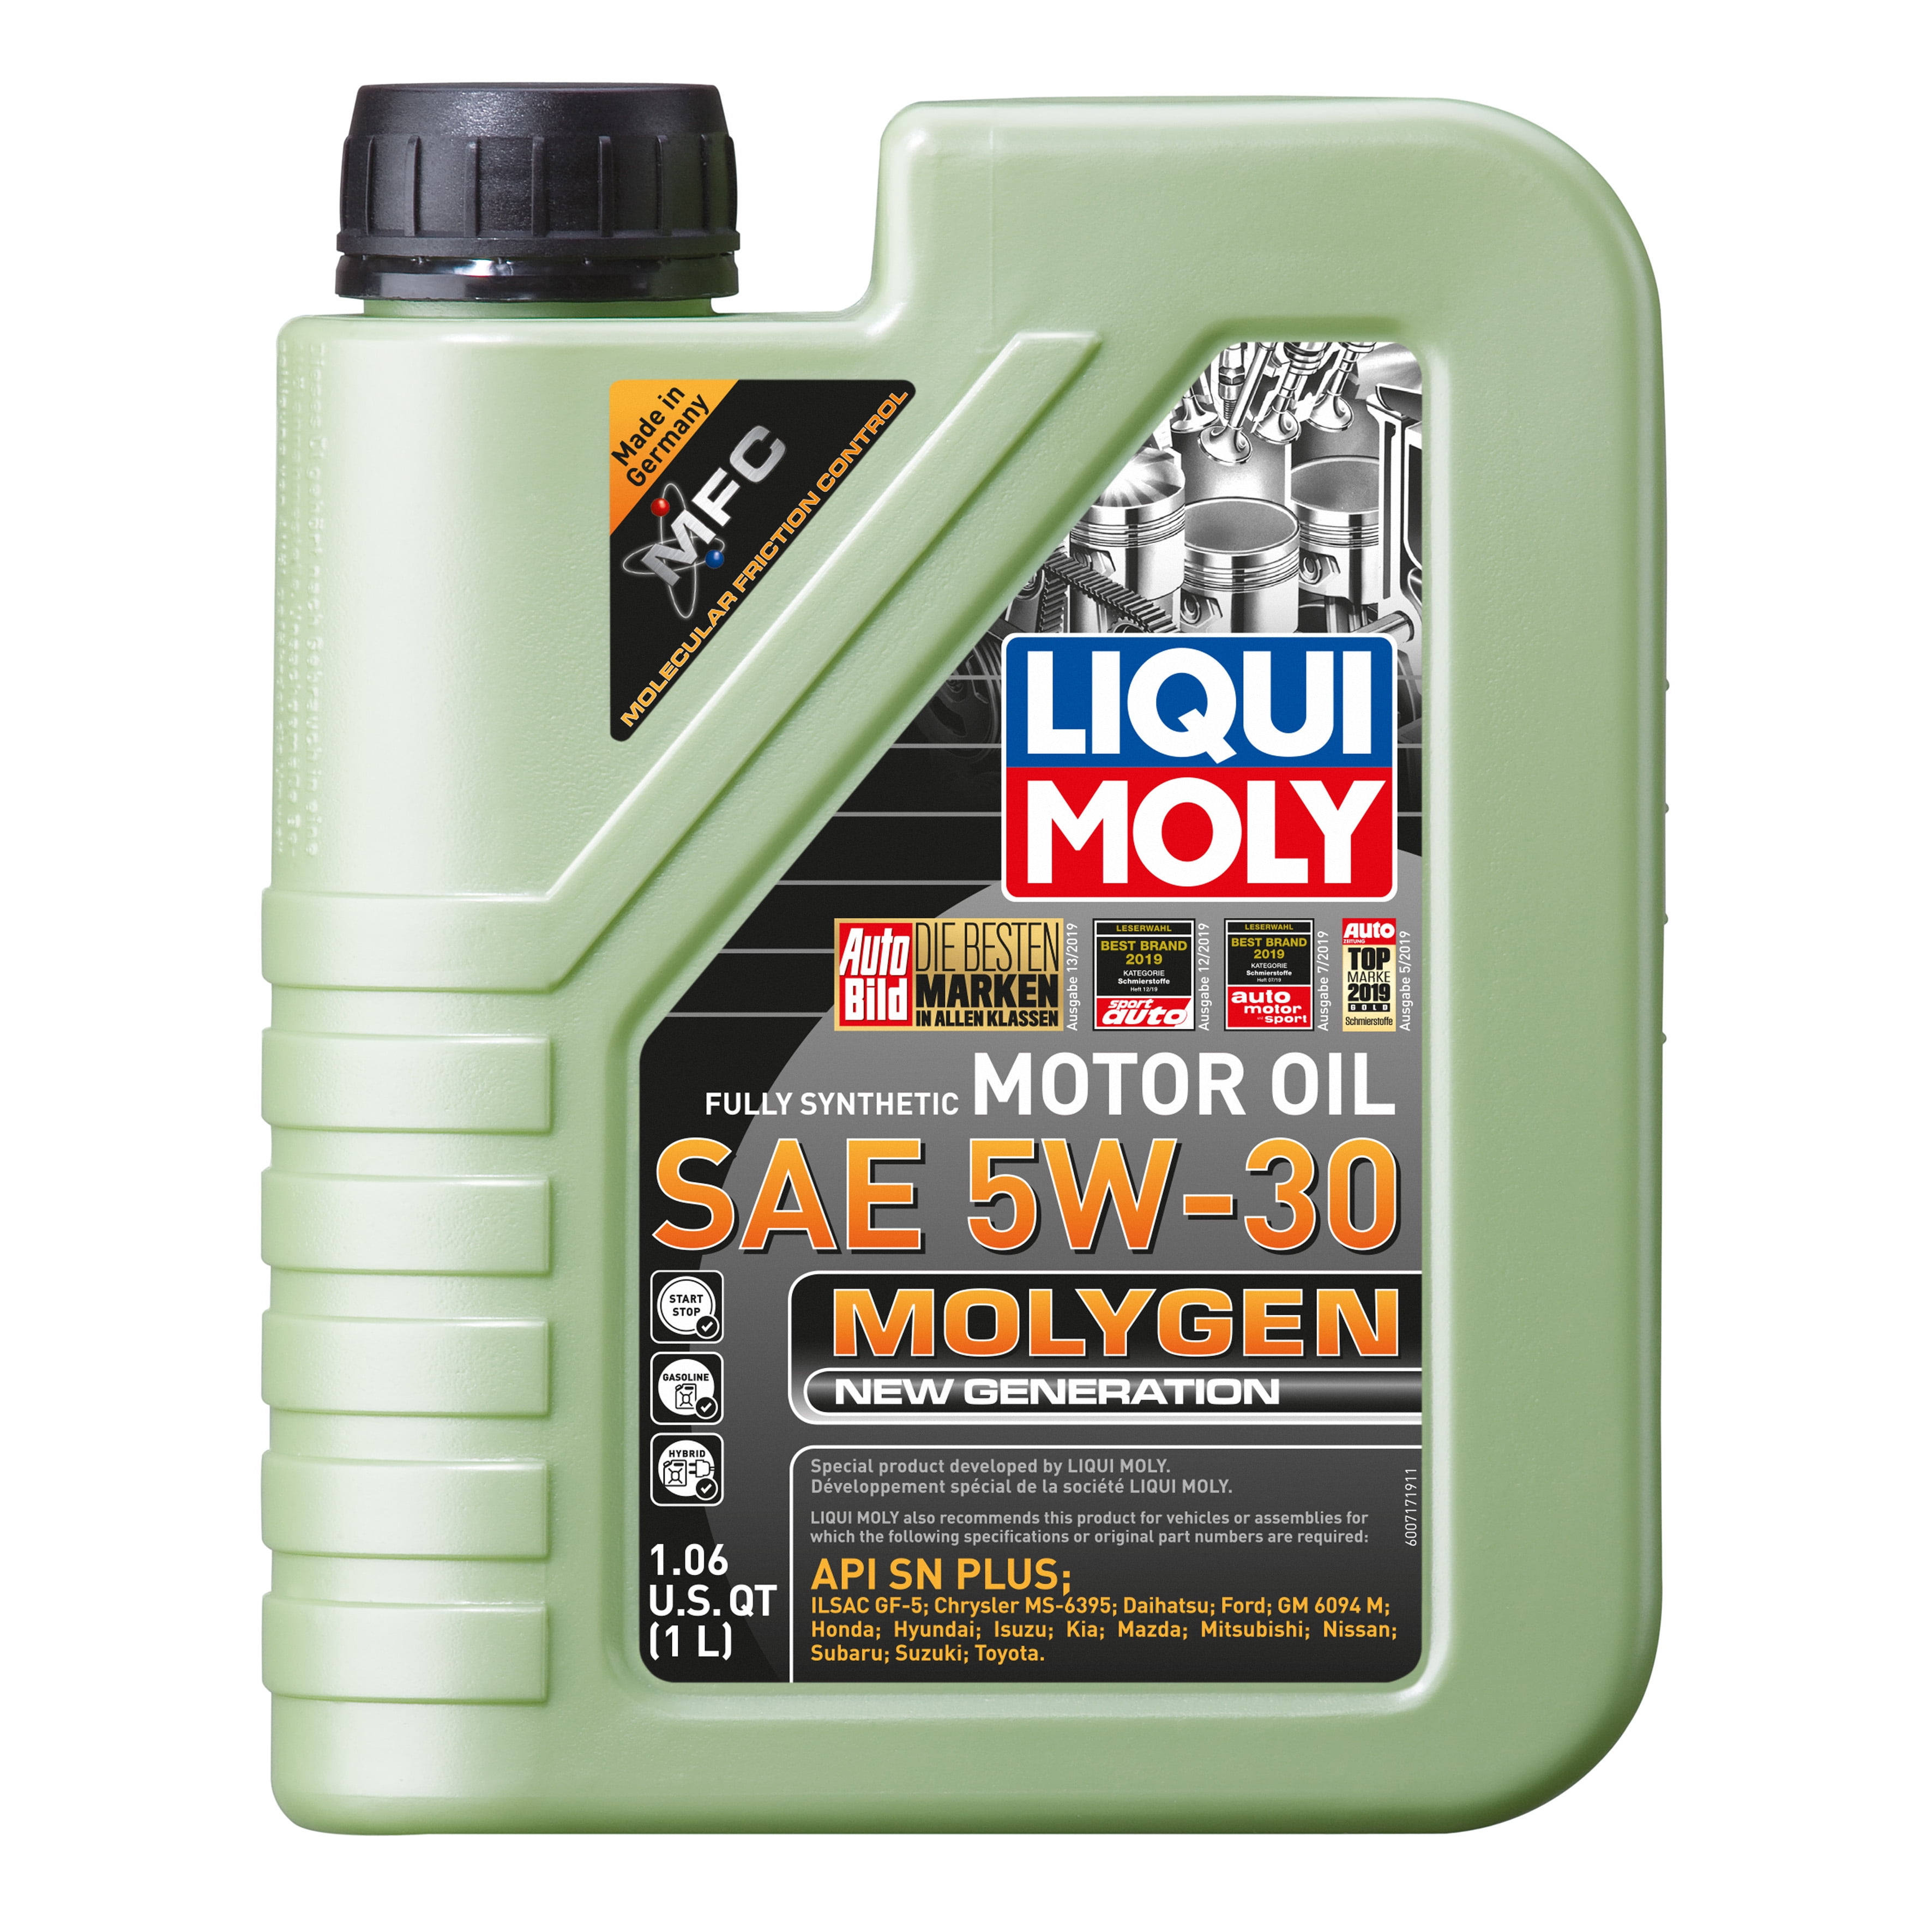 LIQUI MOLY 1L Molygen New Generation Motor Oil 5W-30 - Walmart.com